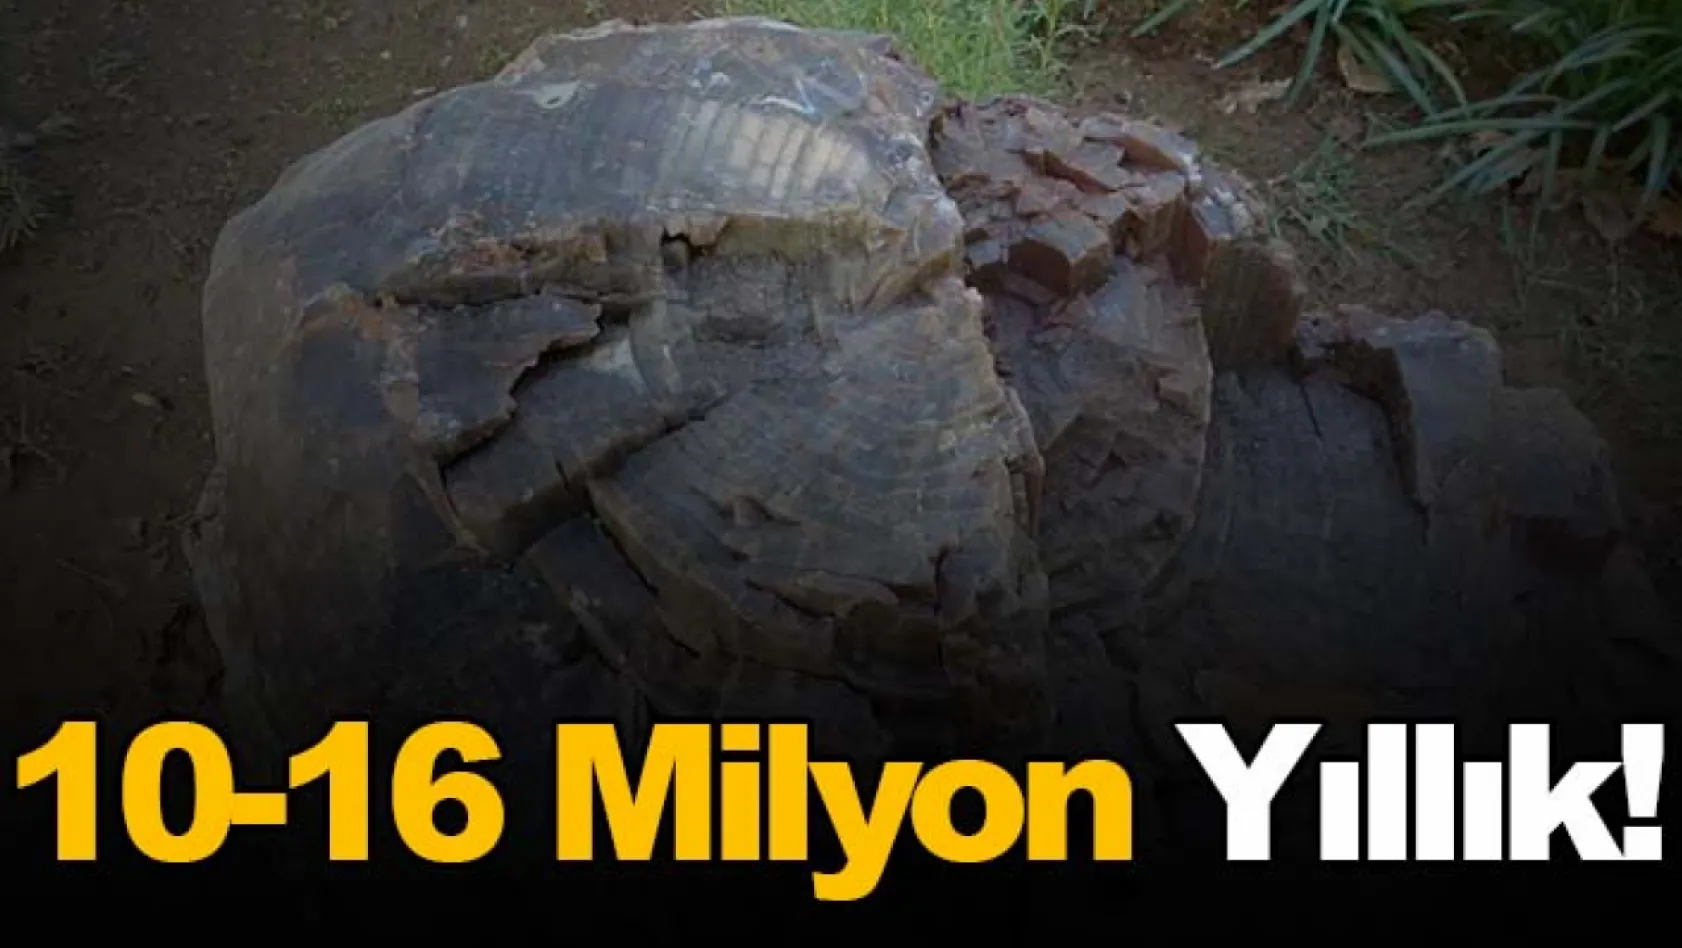 10-16 milyon yıllık! Uşak'ta 2 ağaç fosili bulundu